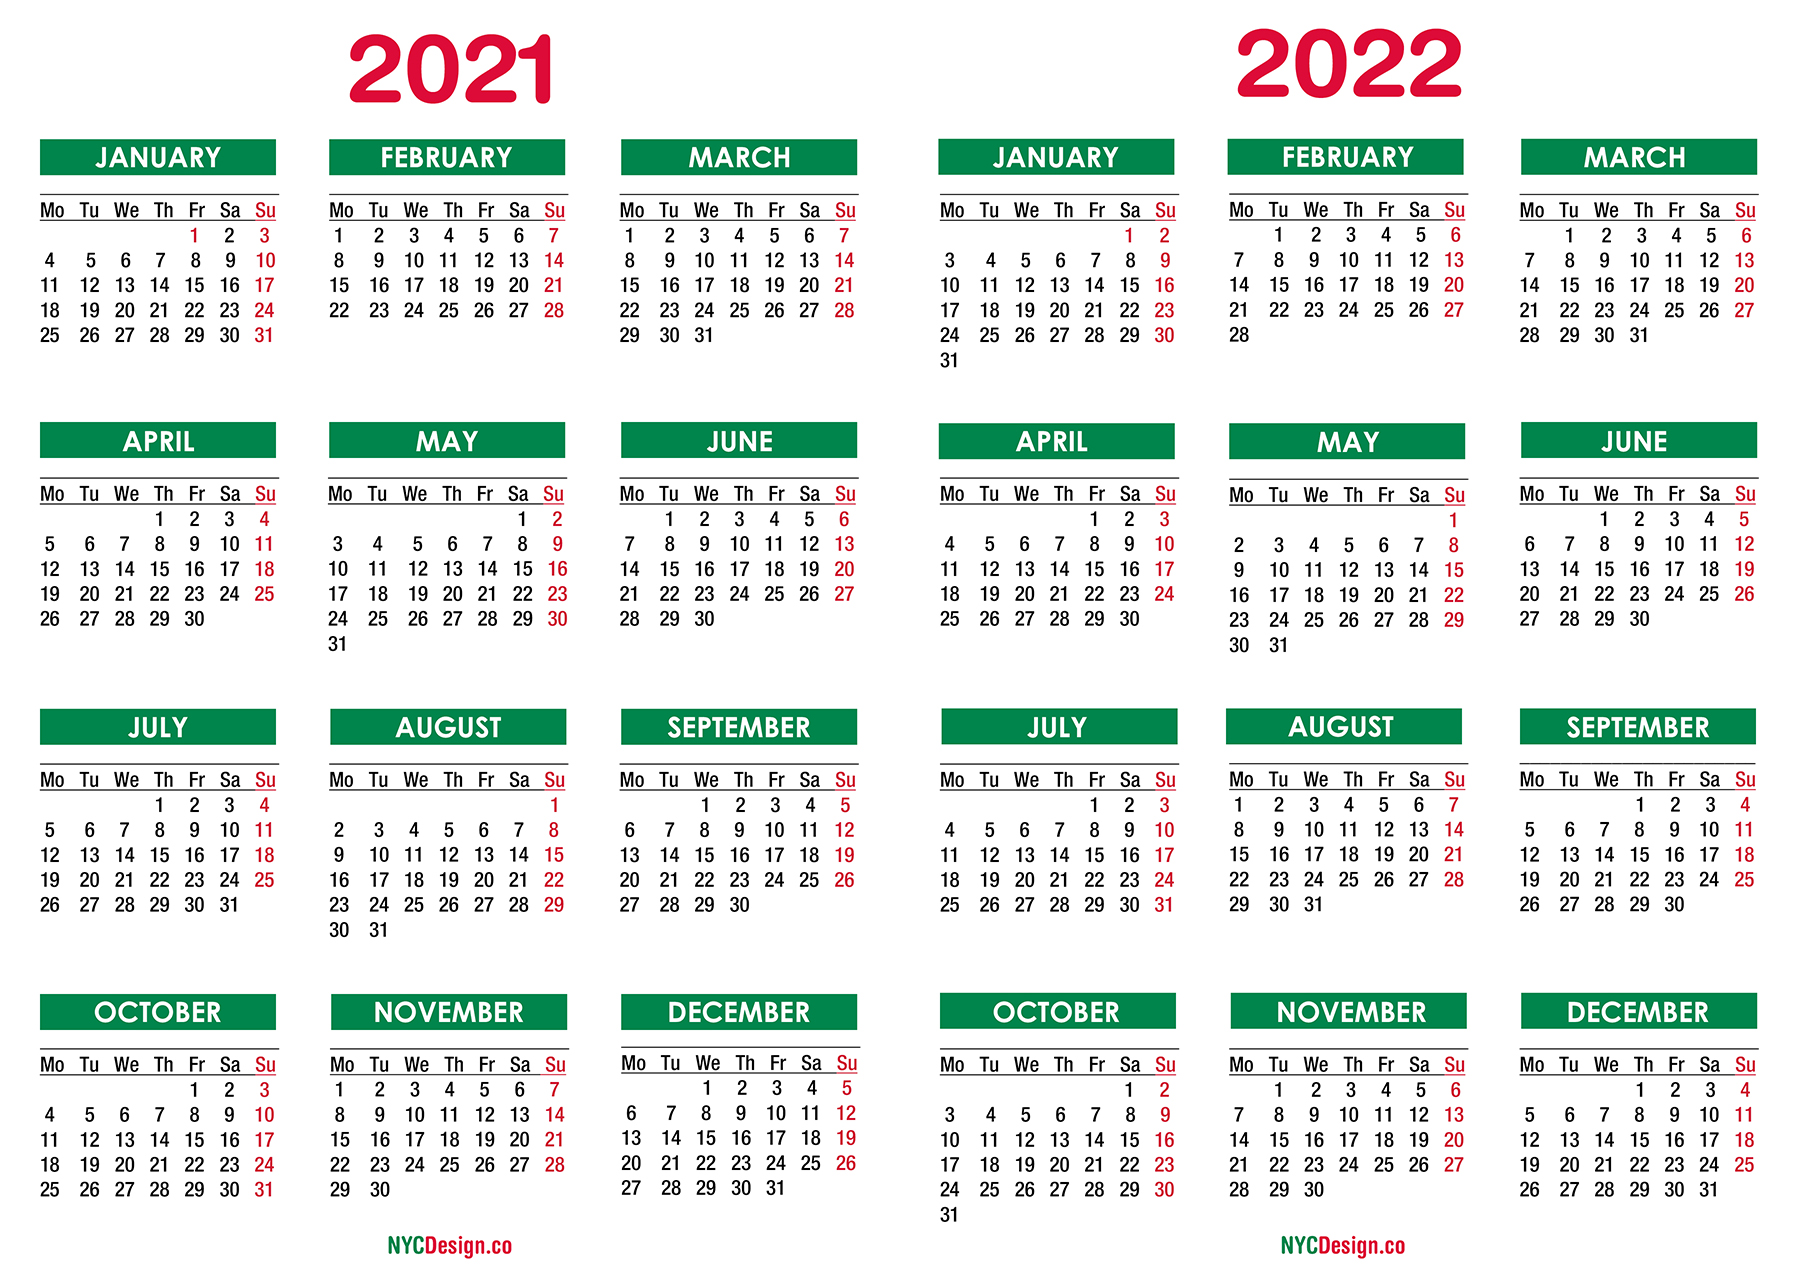 Производственный календарь 2022г